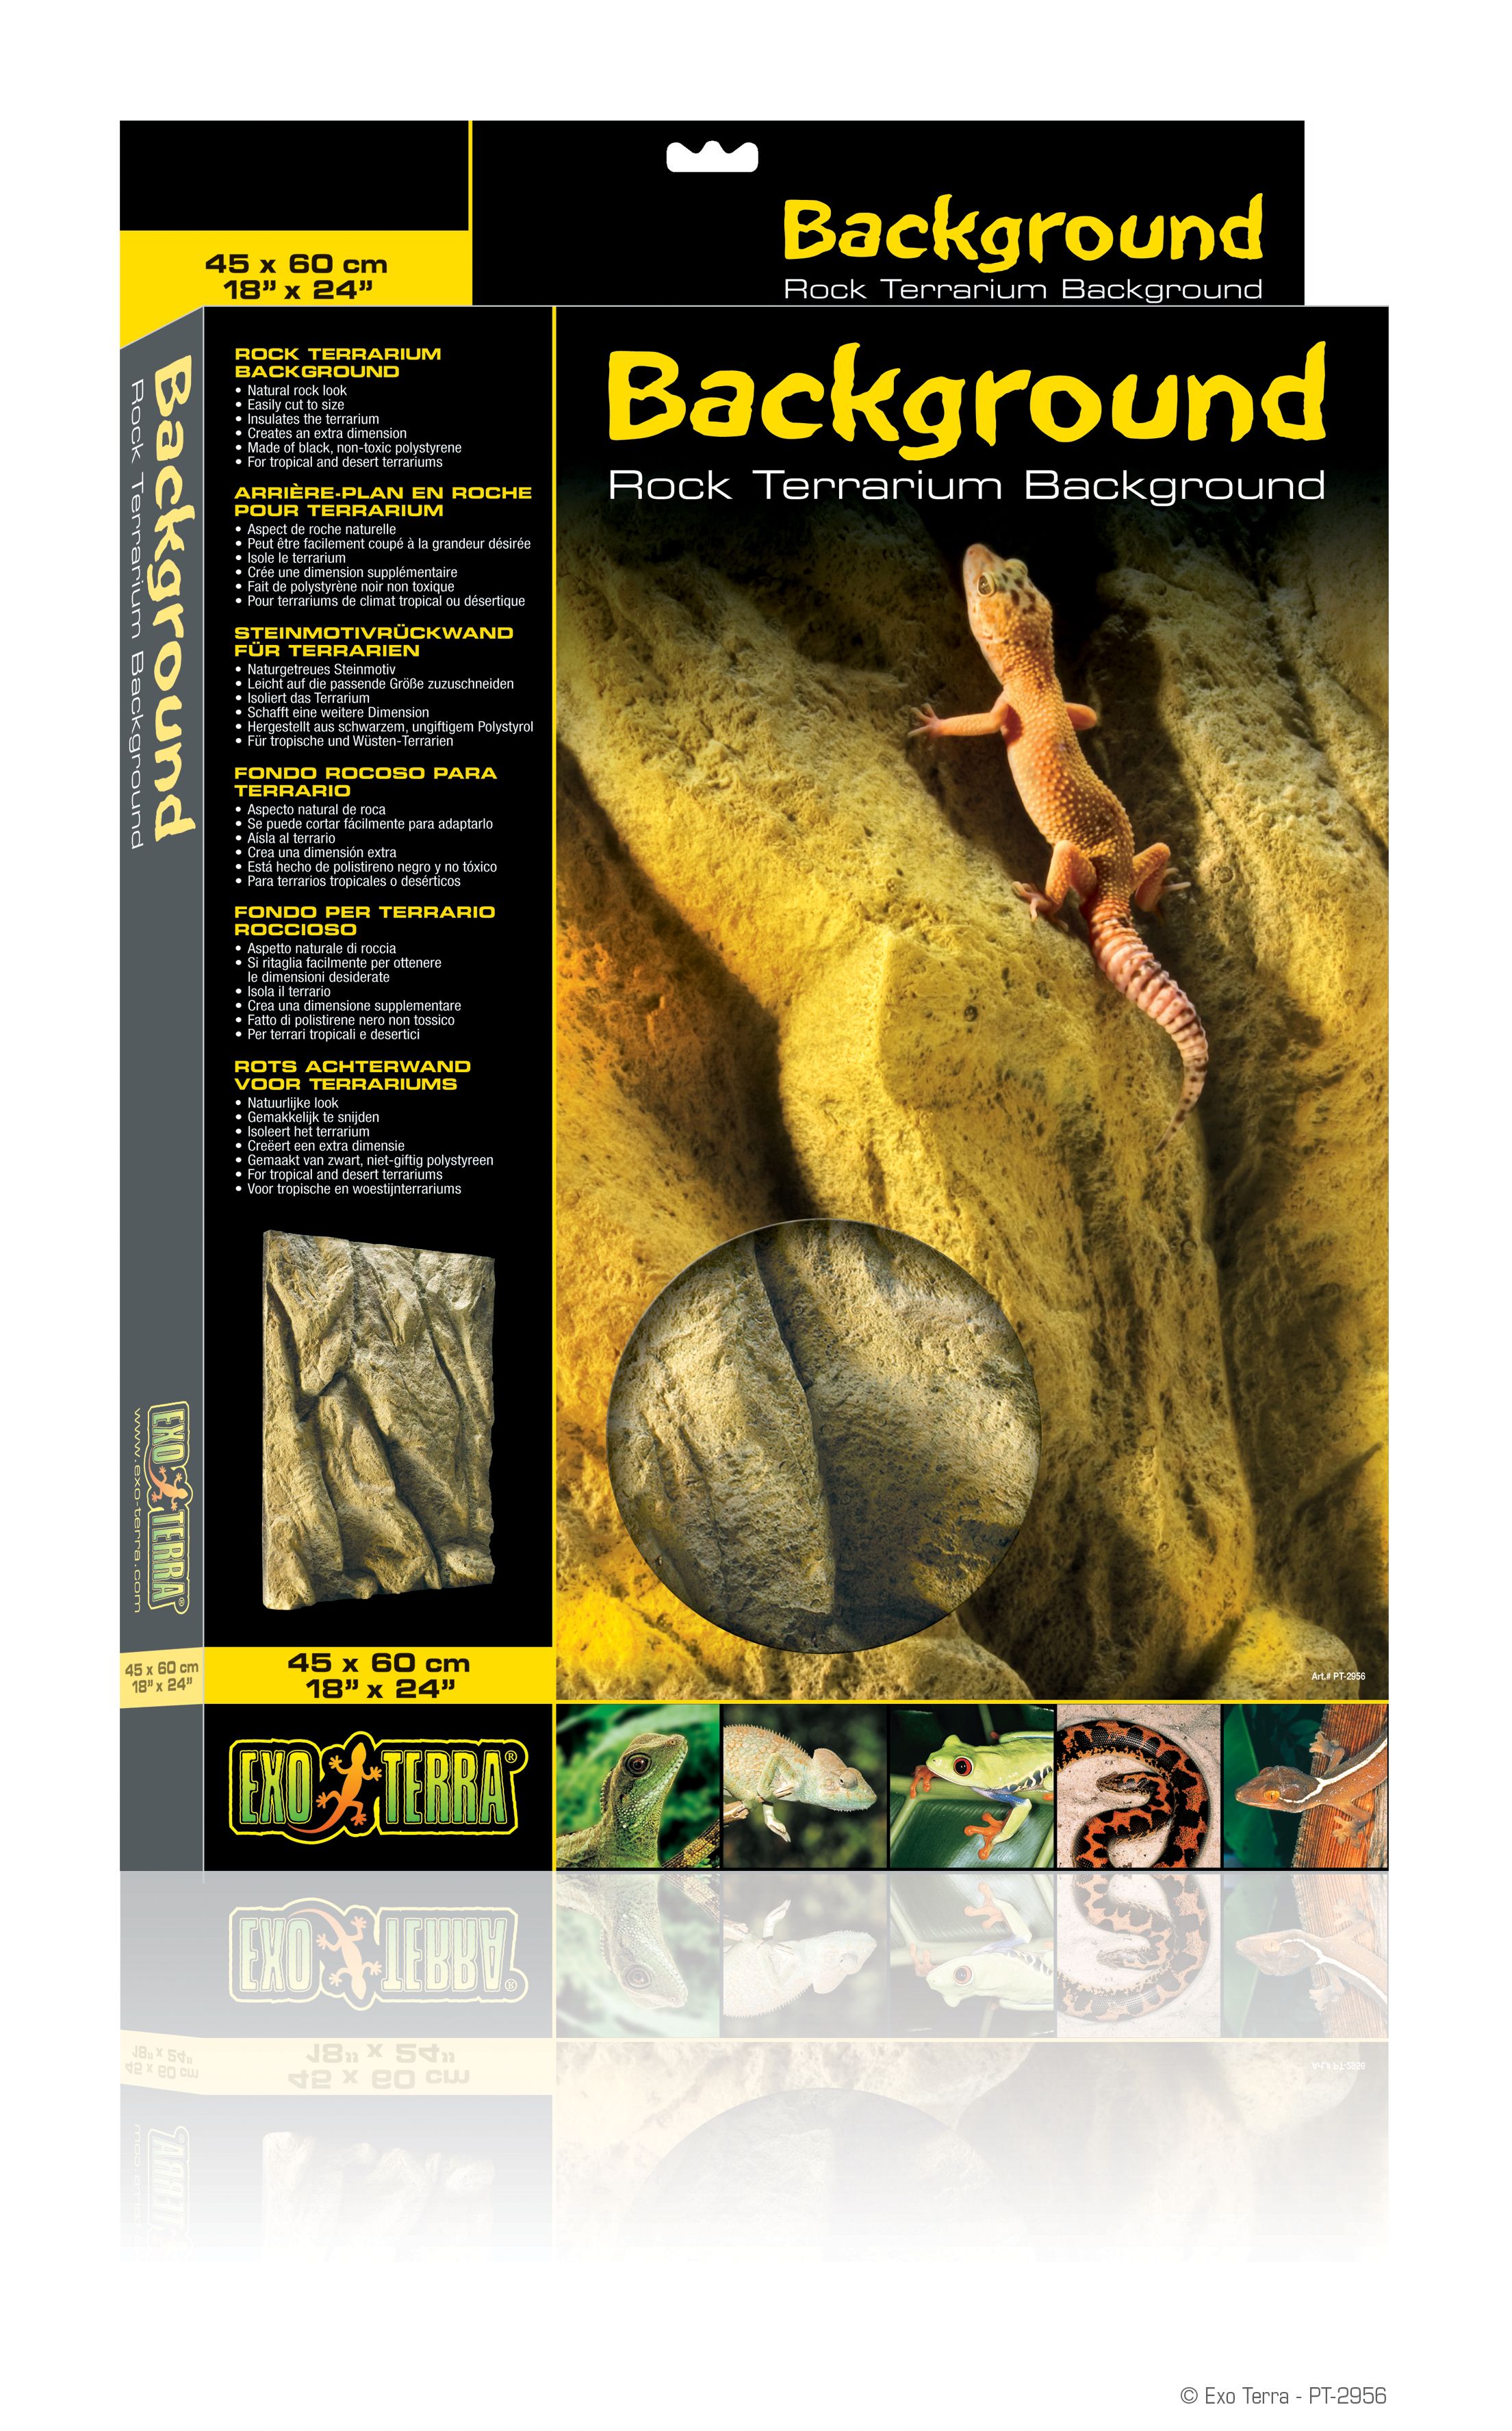 Exo Terra Reptile 3D Background Rock Forterrarium Tank New 18x24